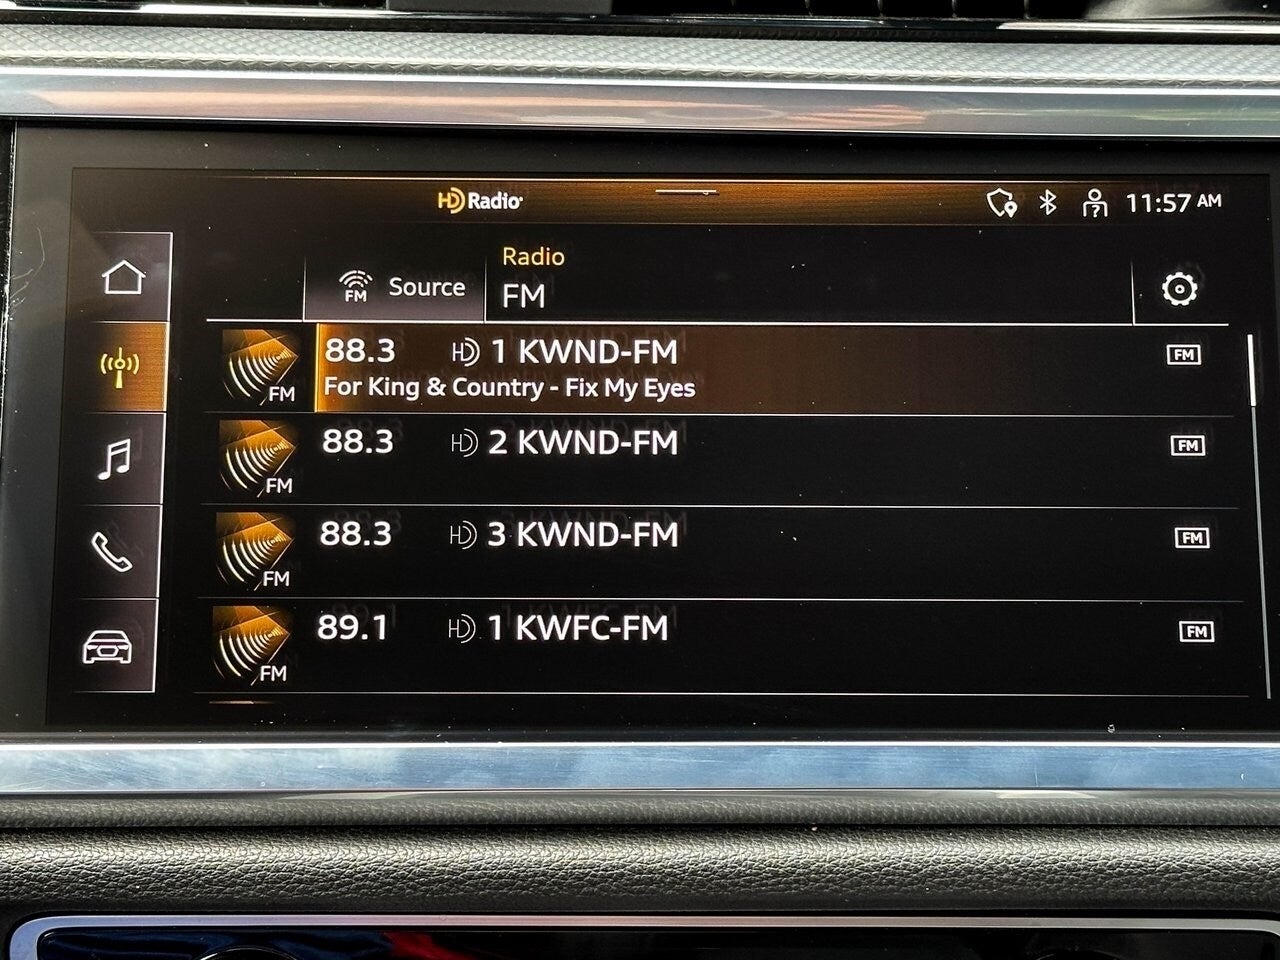 2023 Audi Q3 Premium